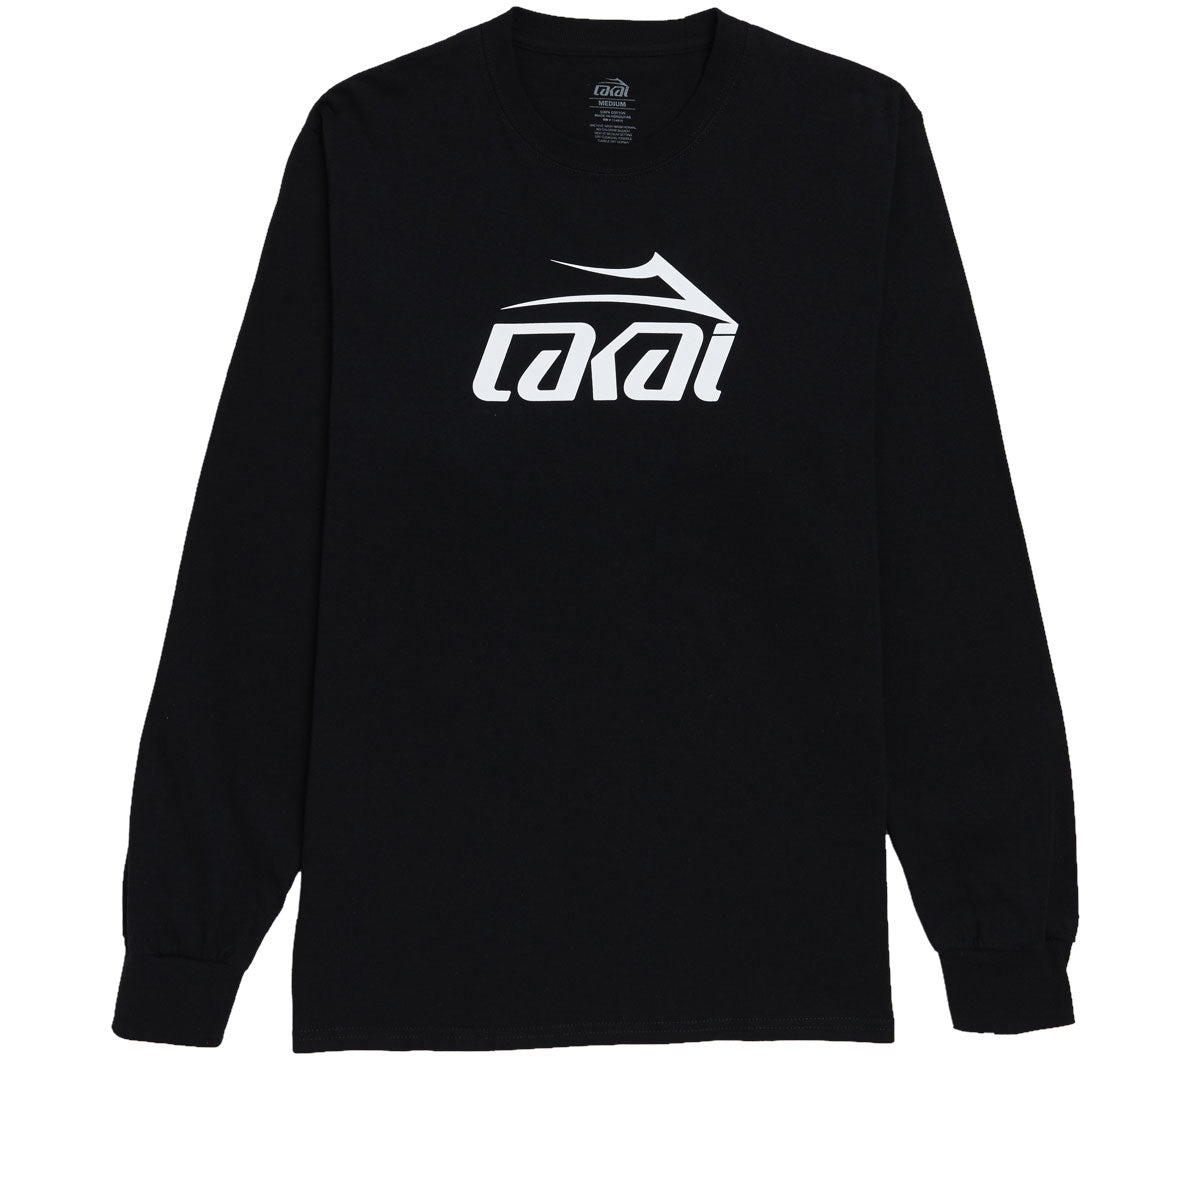 Lakai Basic Long Sleeve T-Shirt - Black image 1